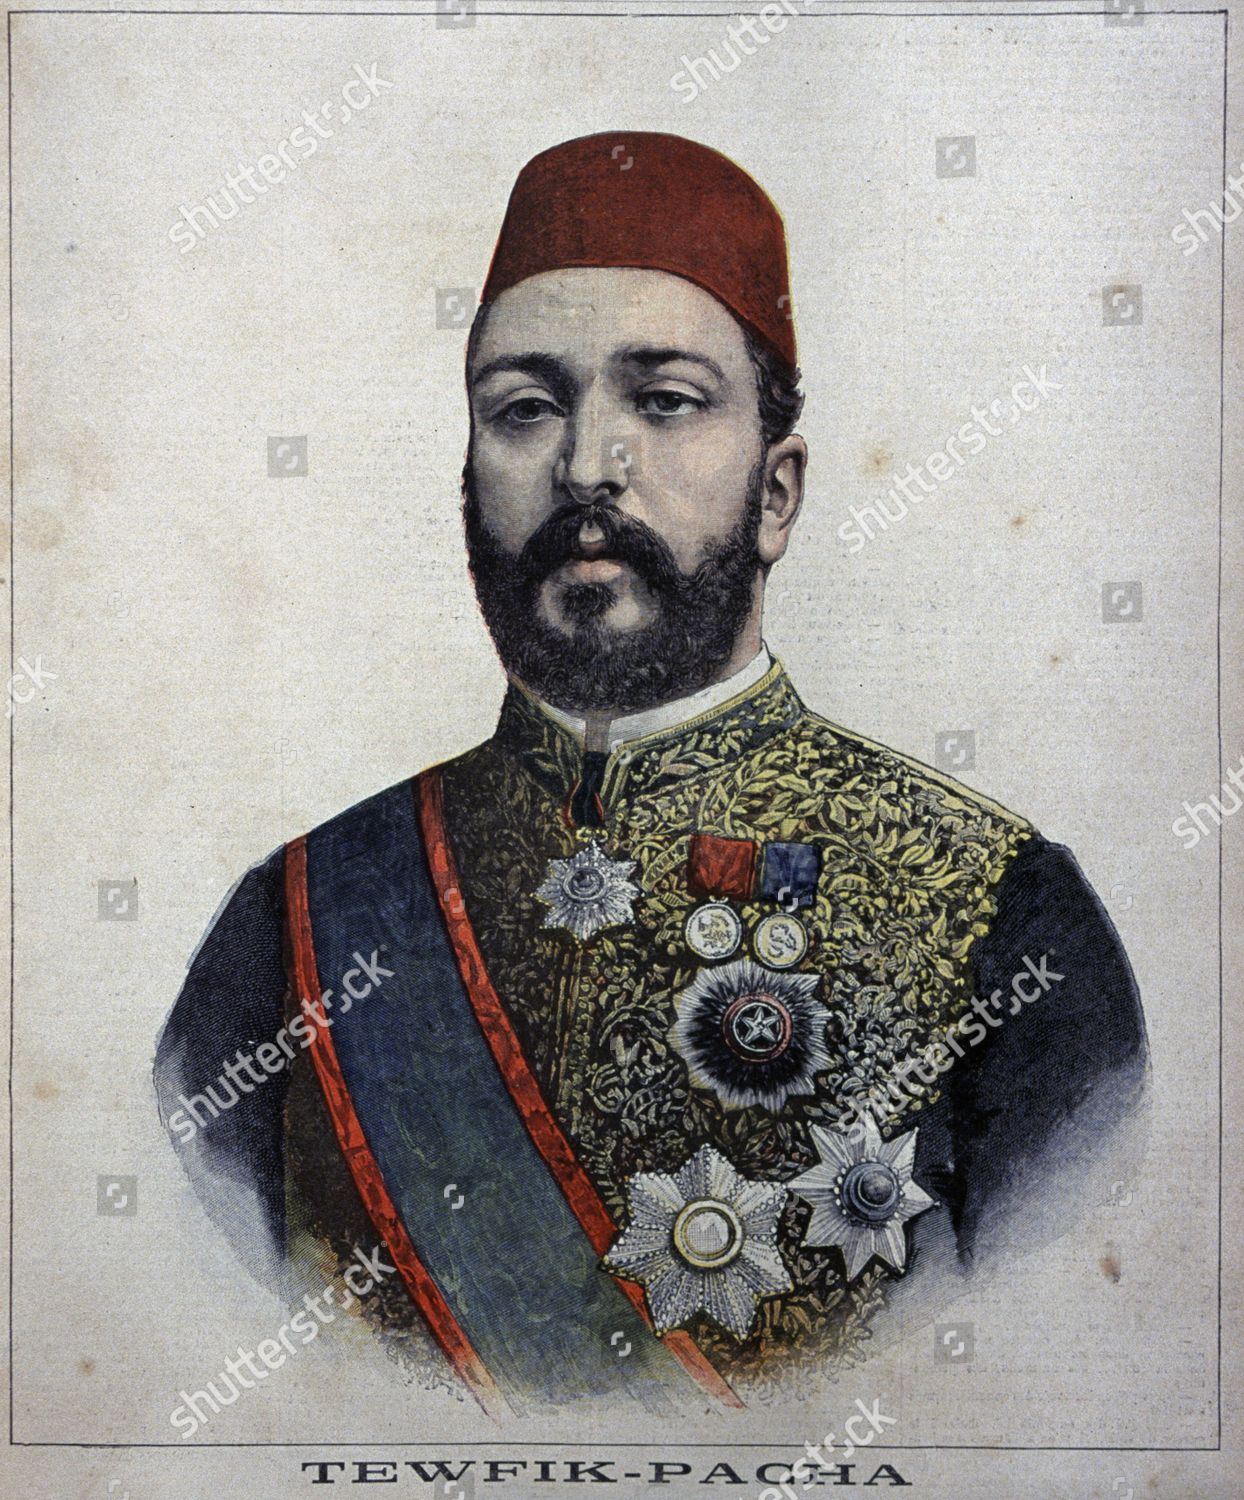 Tewfik Pasha 185292 Khedive Egypt Engraving Editorial Stock Photo ...